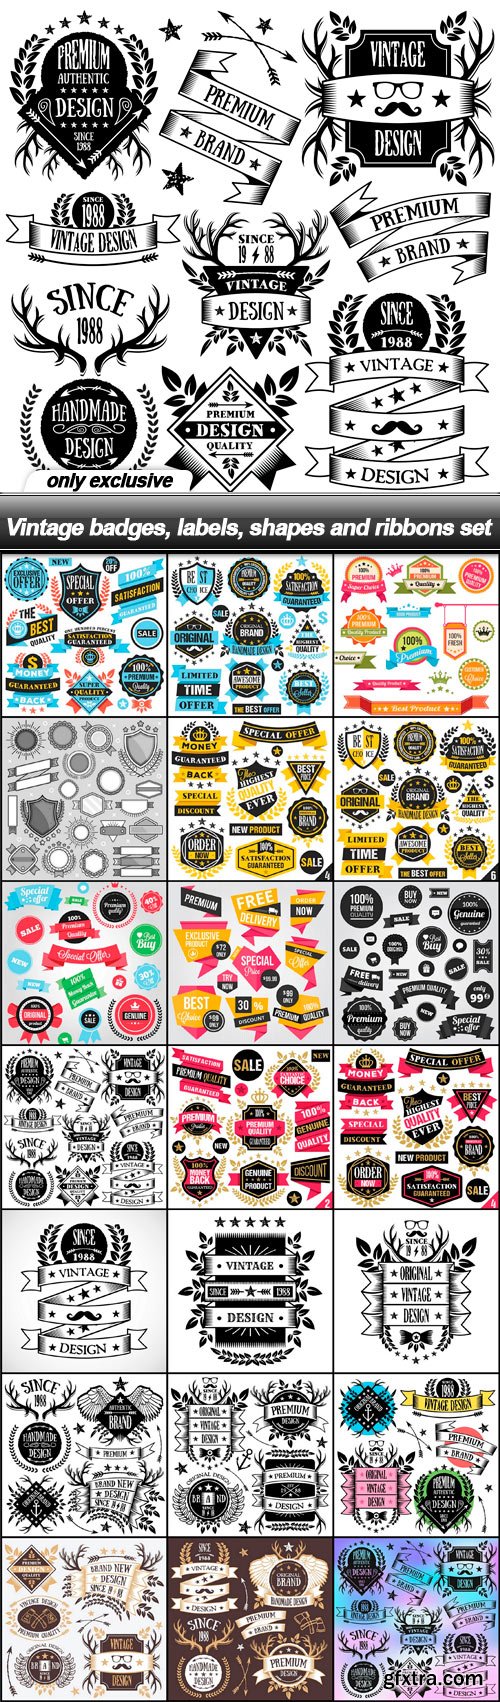 Vintage badges, labels, shapes and ribbons set - 21 EPS